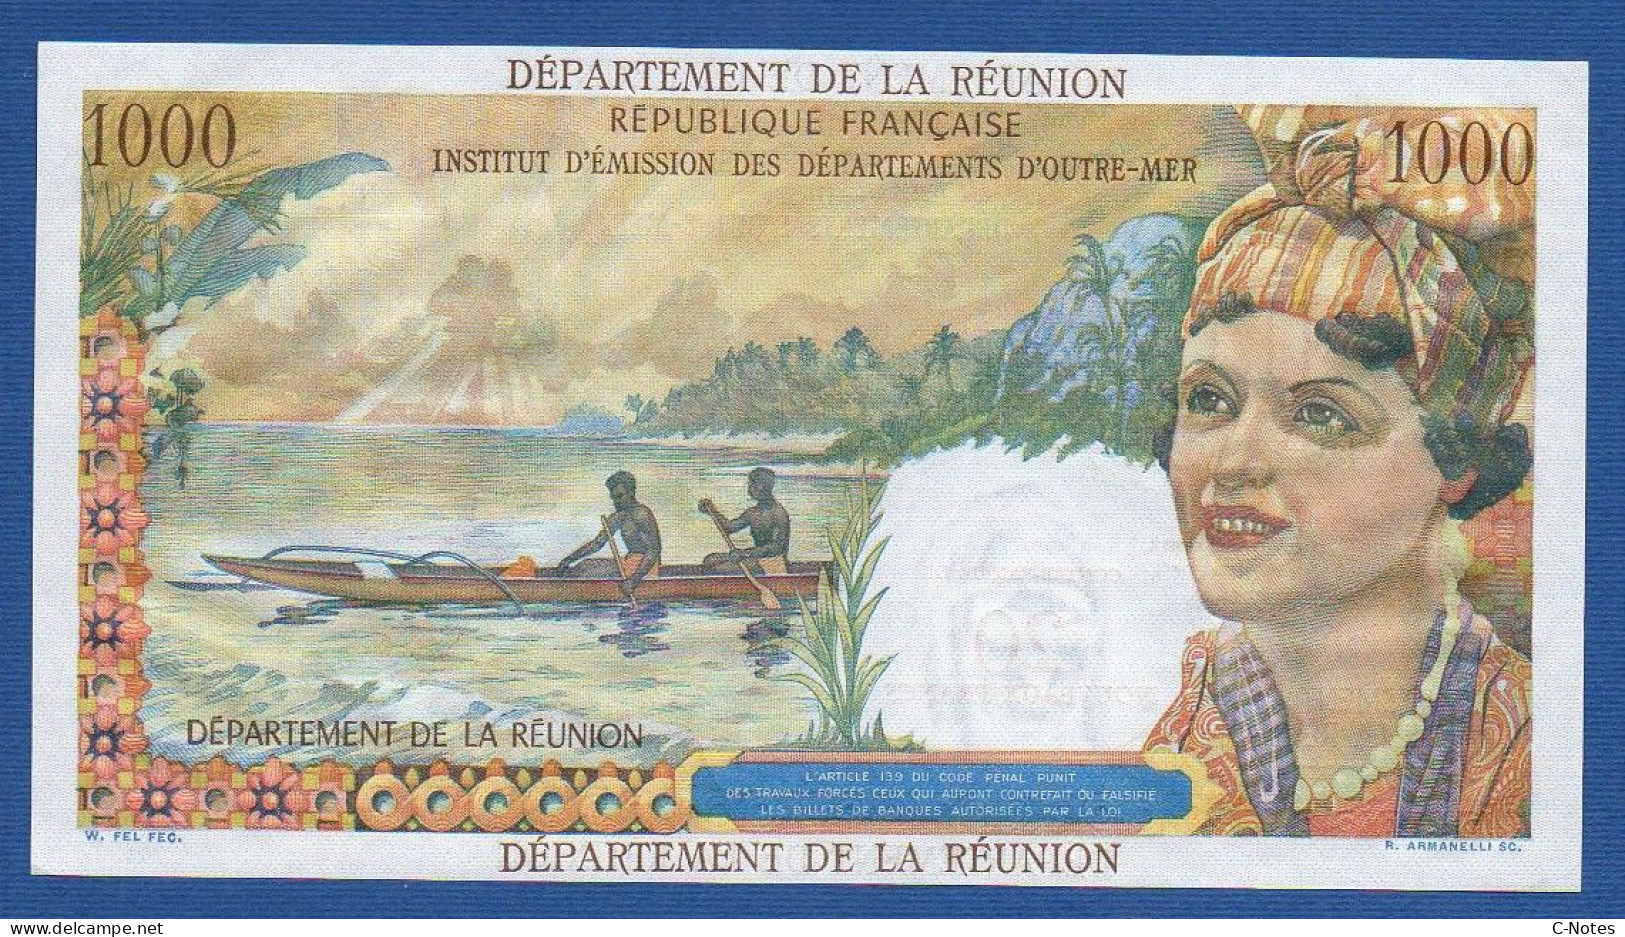 RÉUNION - P.55b – 20 Nouveaux Francs ND (1971) UNC, S/n T.2 86704 - Réunion